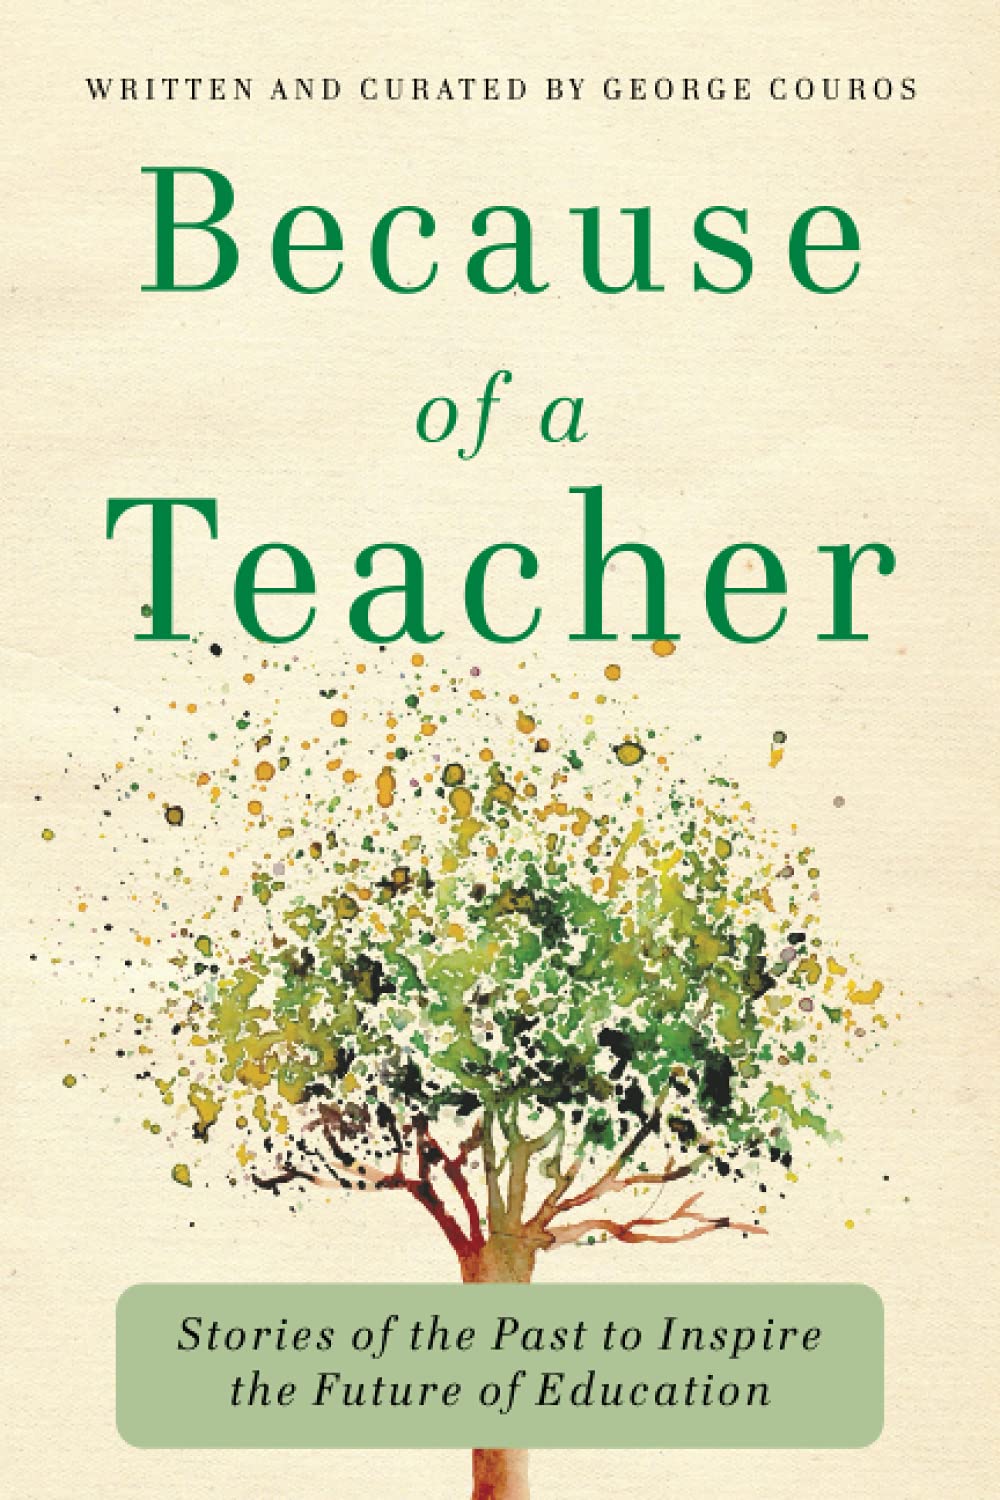  शिक्षकों के लिए 27 प्रेरक पुस्तकें